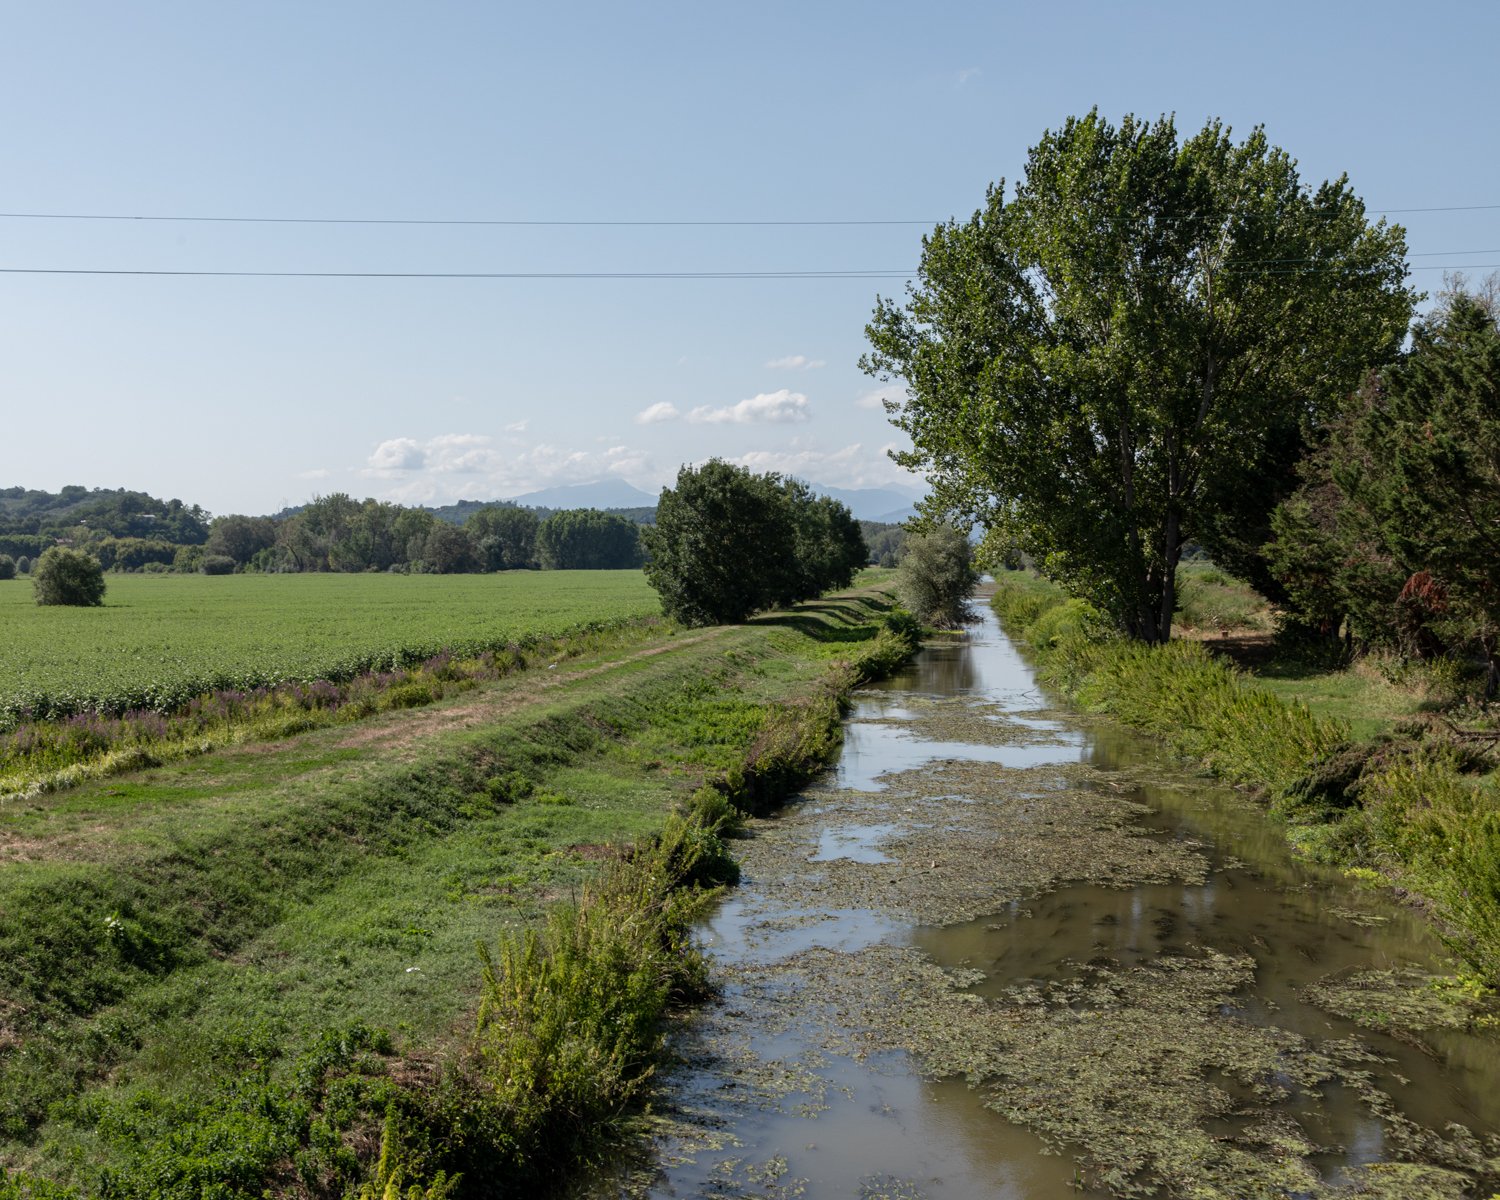  Il canale Rogio attraversa tutta la pianura lucchese: qui nella zona sud di Lucca attraversa la piccola pianura alluvionale denominata Padule e assieme al lago della Gherardesca e ad altri canali è quanto rimane dell’antico lago di Sesto. Porcari (L